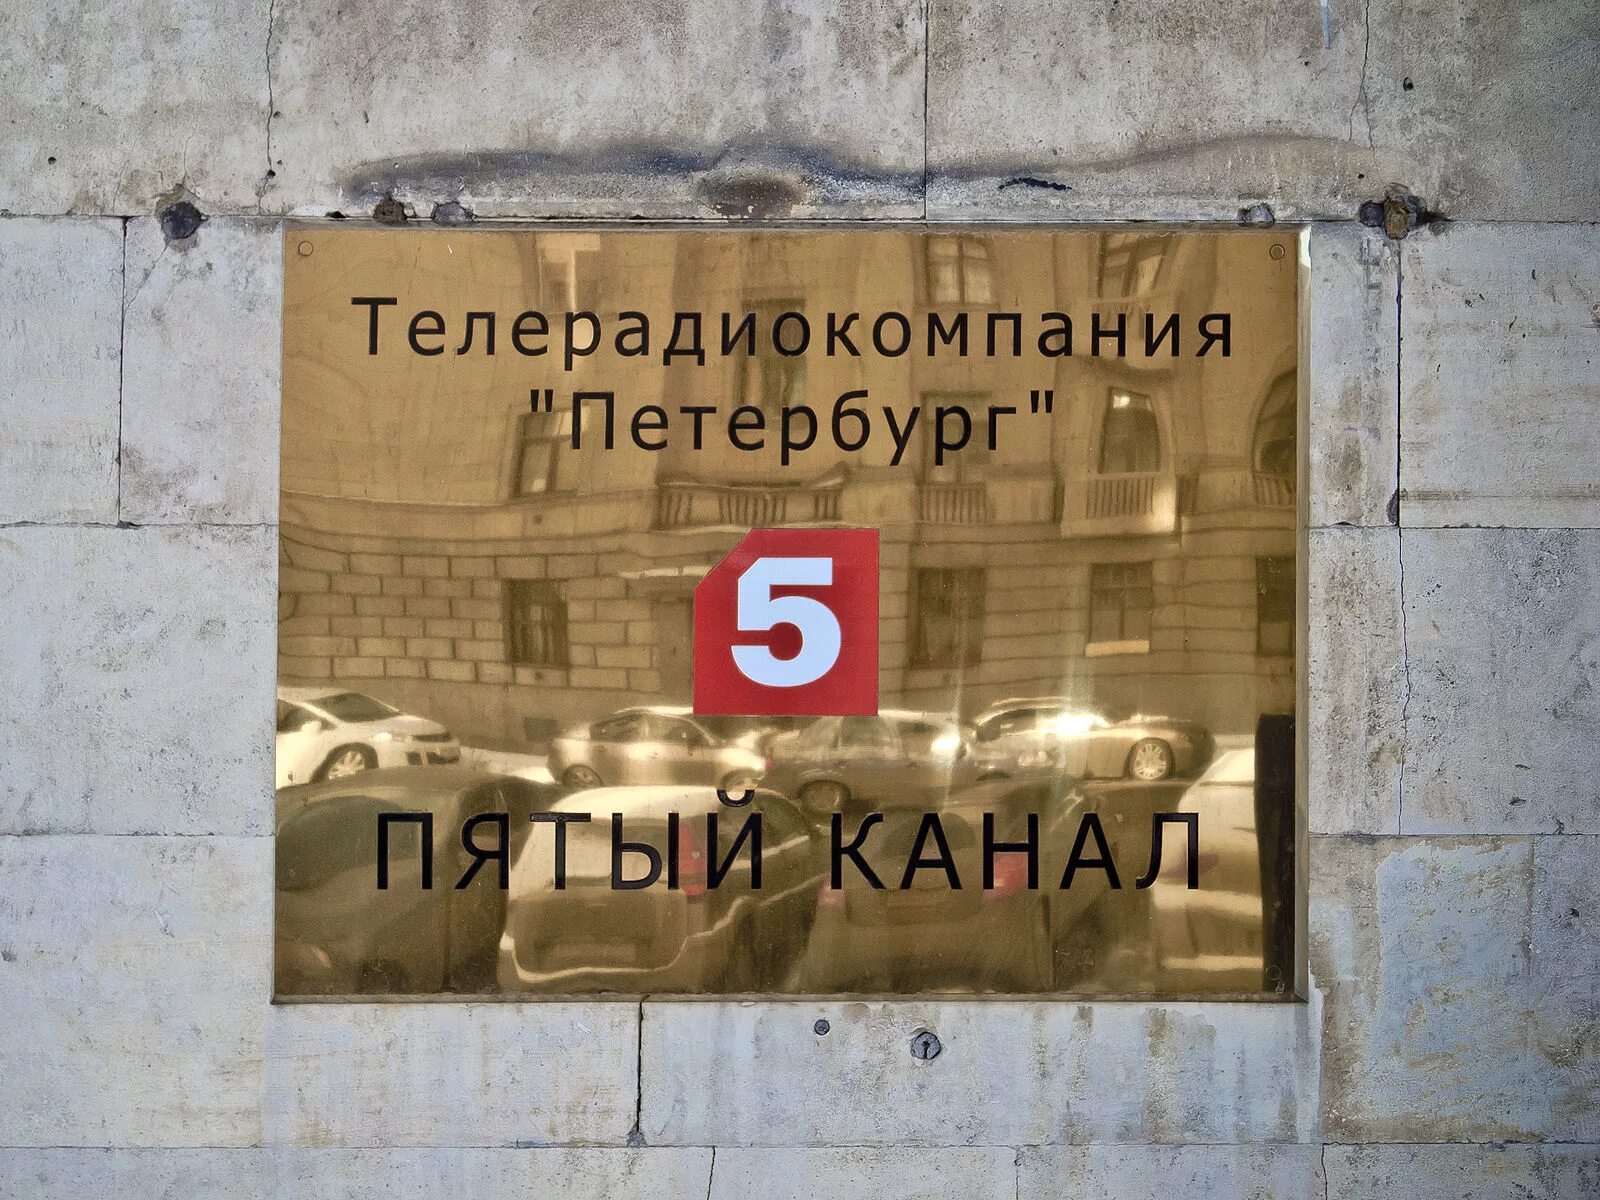 5 Канал. Канал пятый канал. Телекомпания 5 канал Петербург. Логотип 5 канала Петербург.